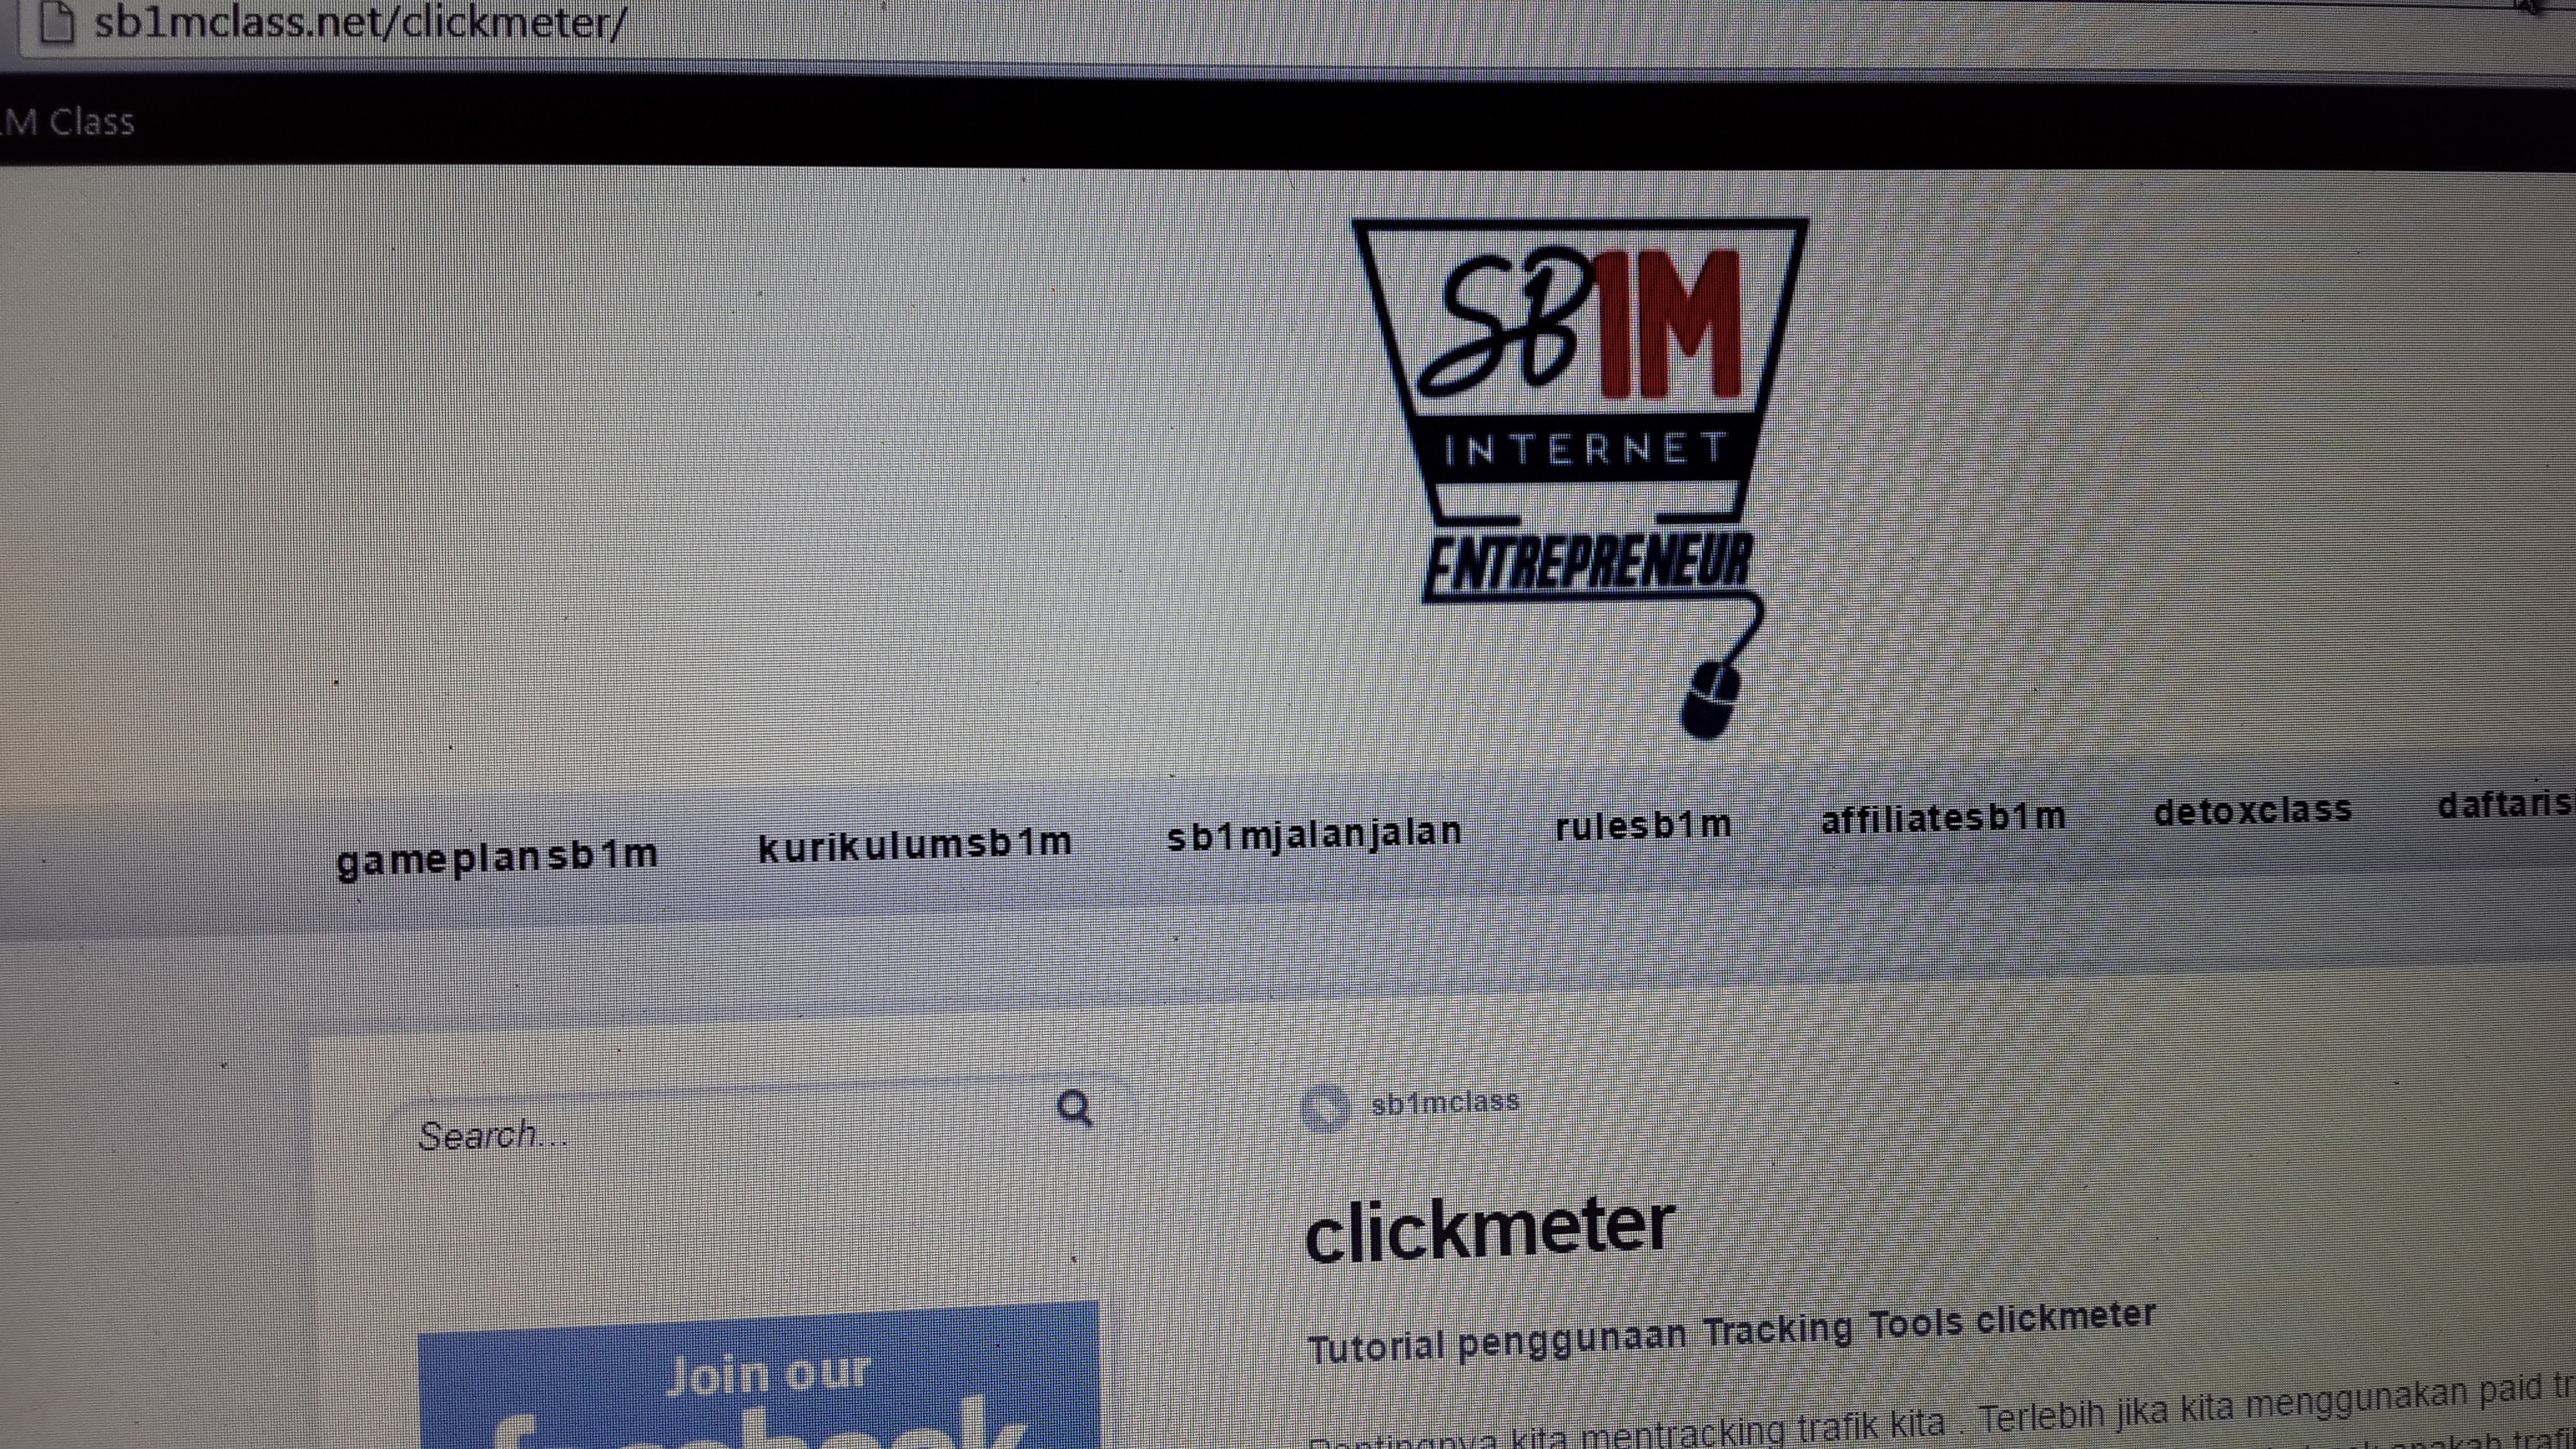 materi-pelatihan-bisnis-internet-sb1m-clickmeter